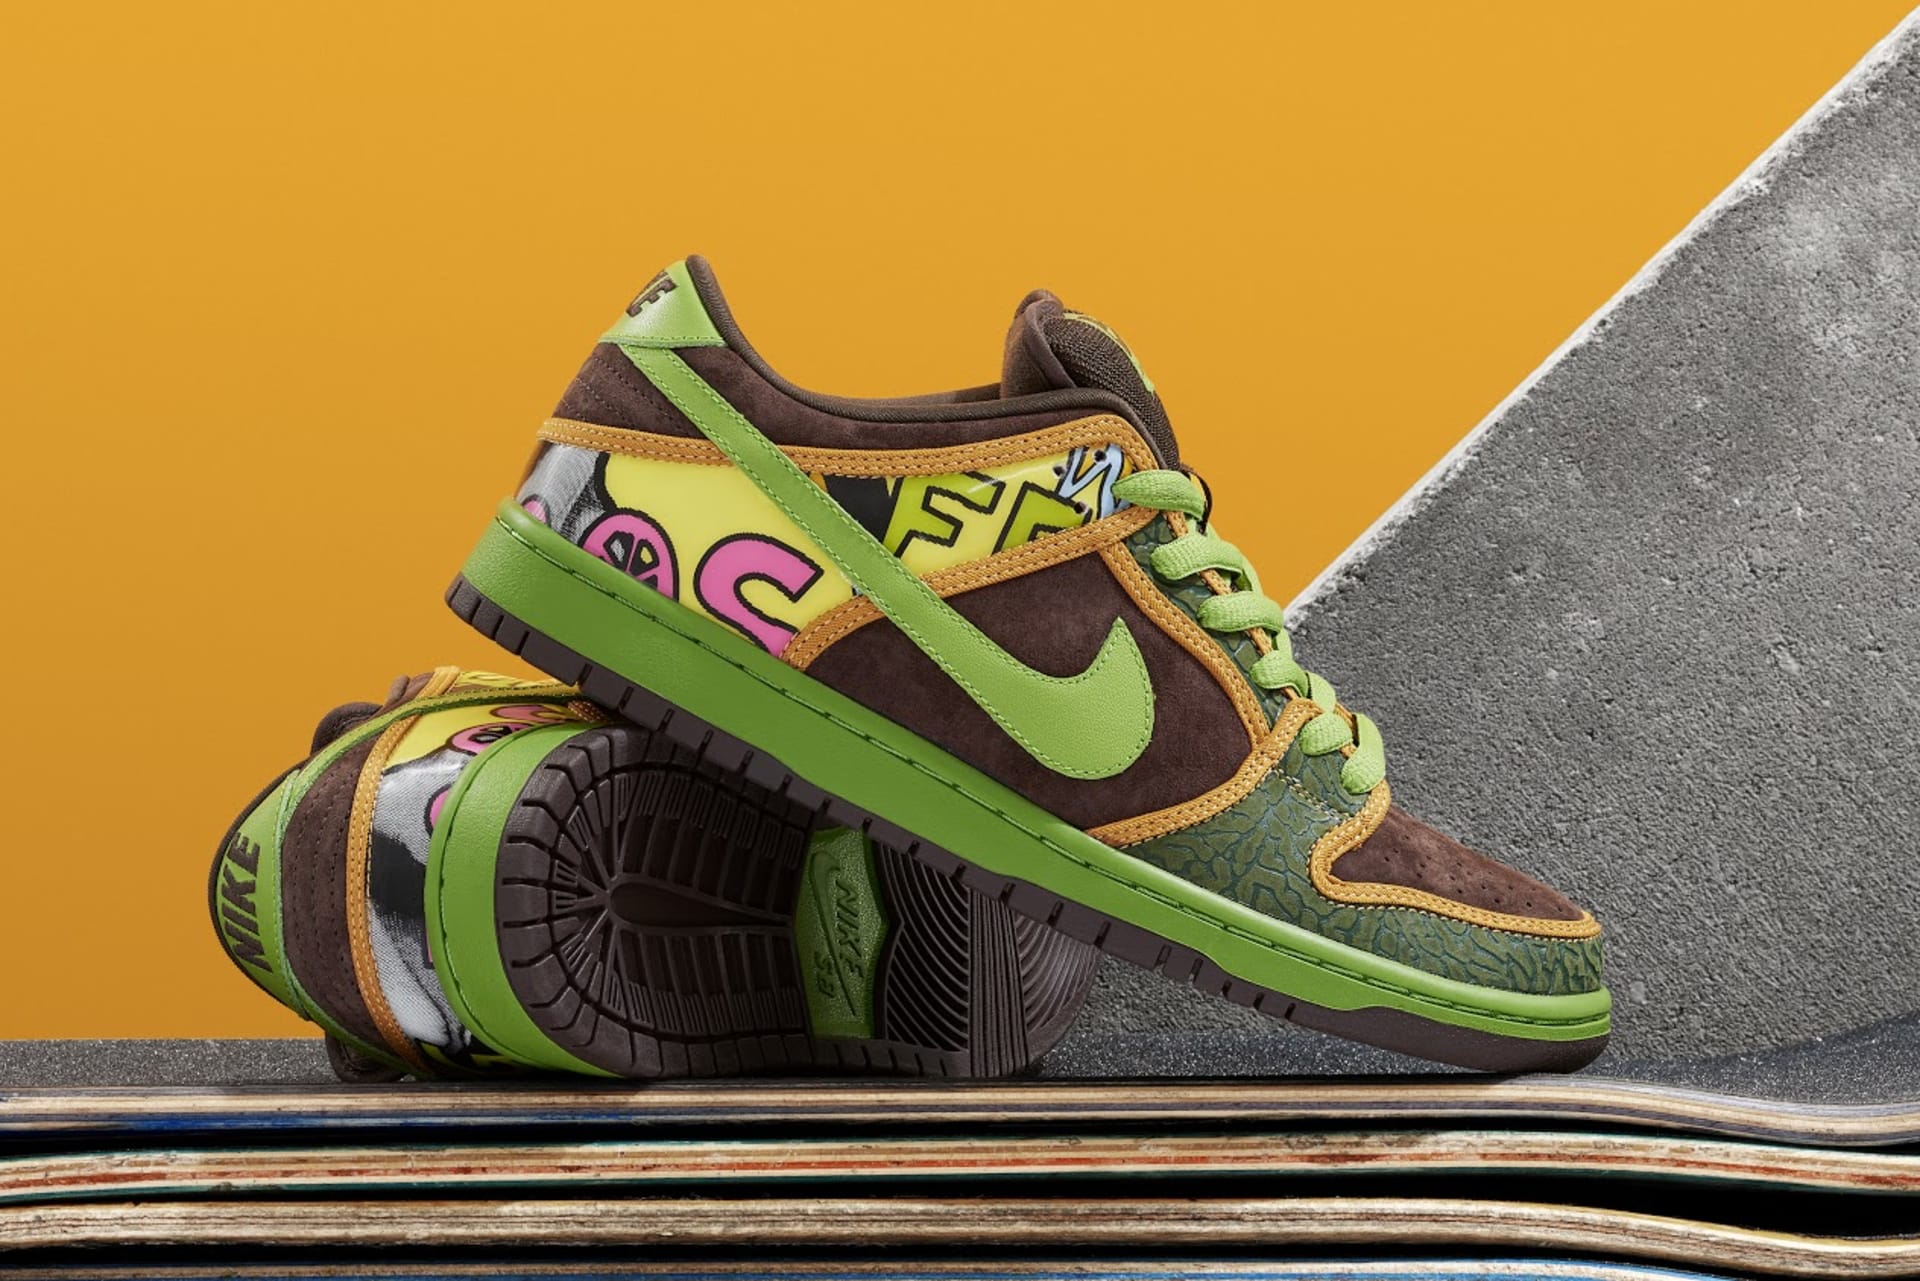 Exclusive: The Nike Dunk SB 'De La Soul' Is Back 2015 | Complex